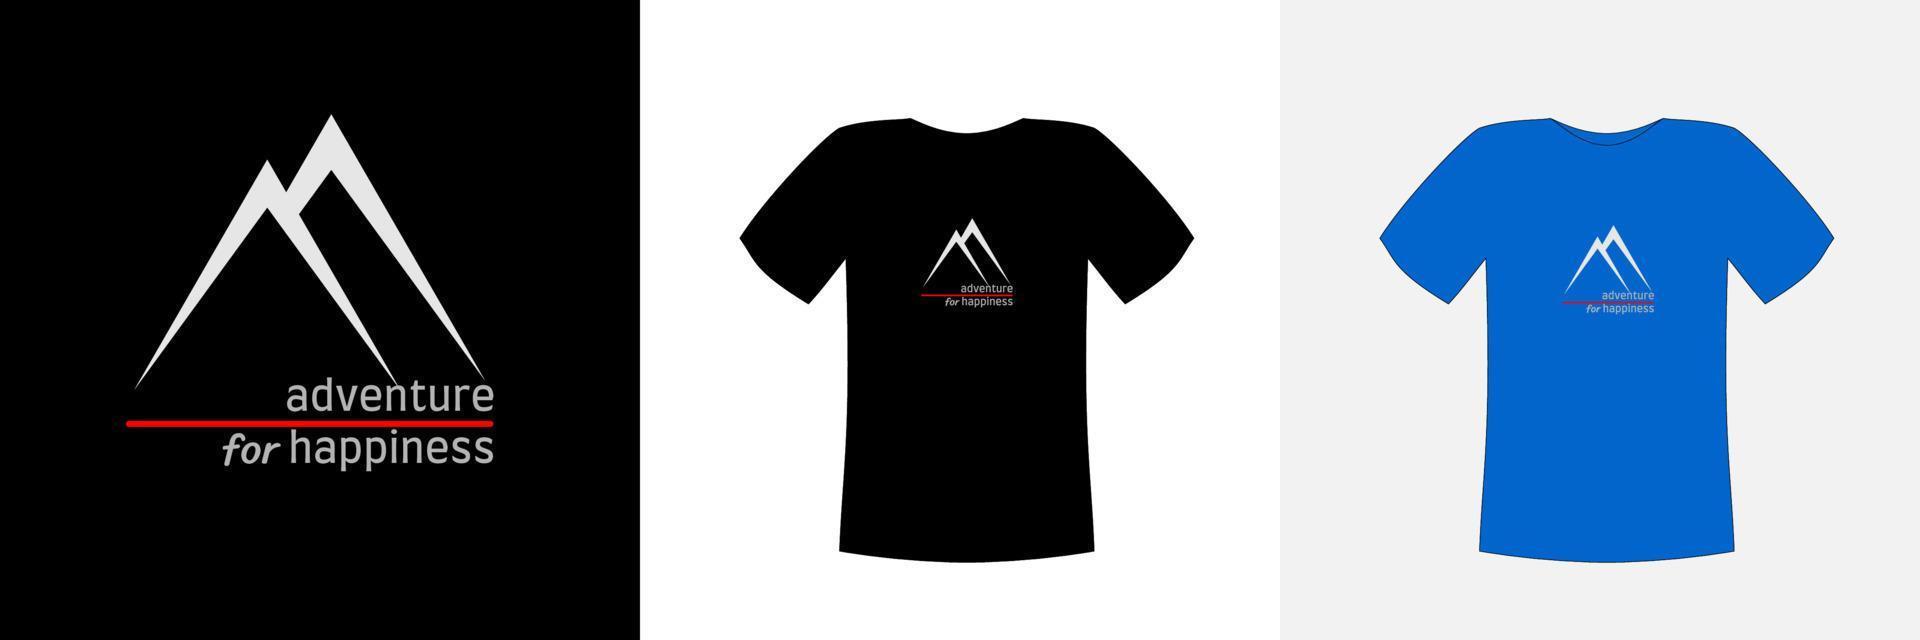 el vector de diseño de camisetas, con una forma de ilustración de dos montañas blancas en un paño oscuro con el texto aventura por la felicidad, se puede ajustar para diferentes colores de fondo